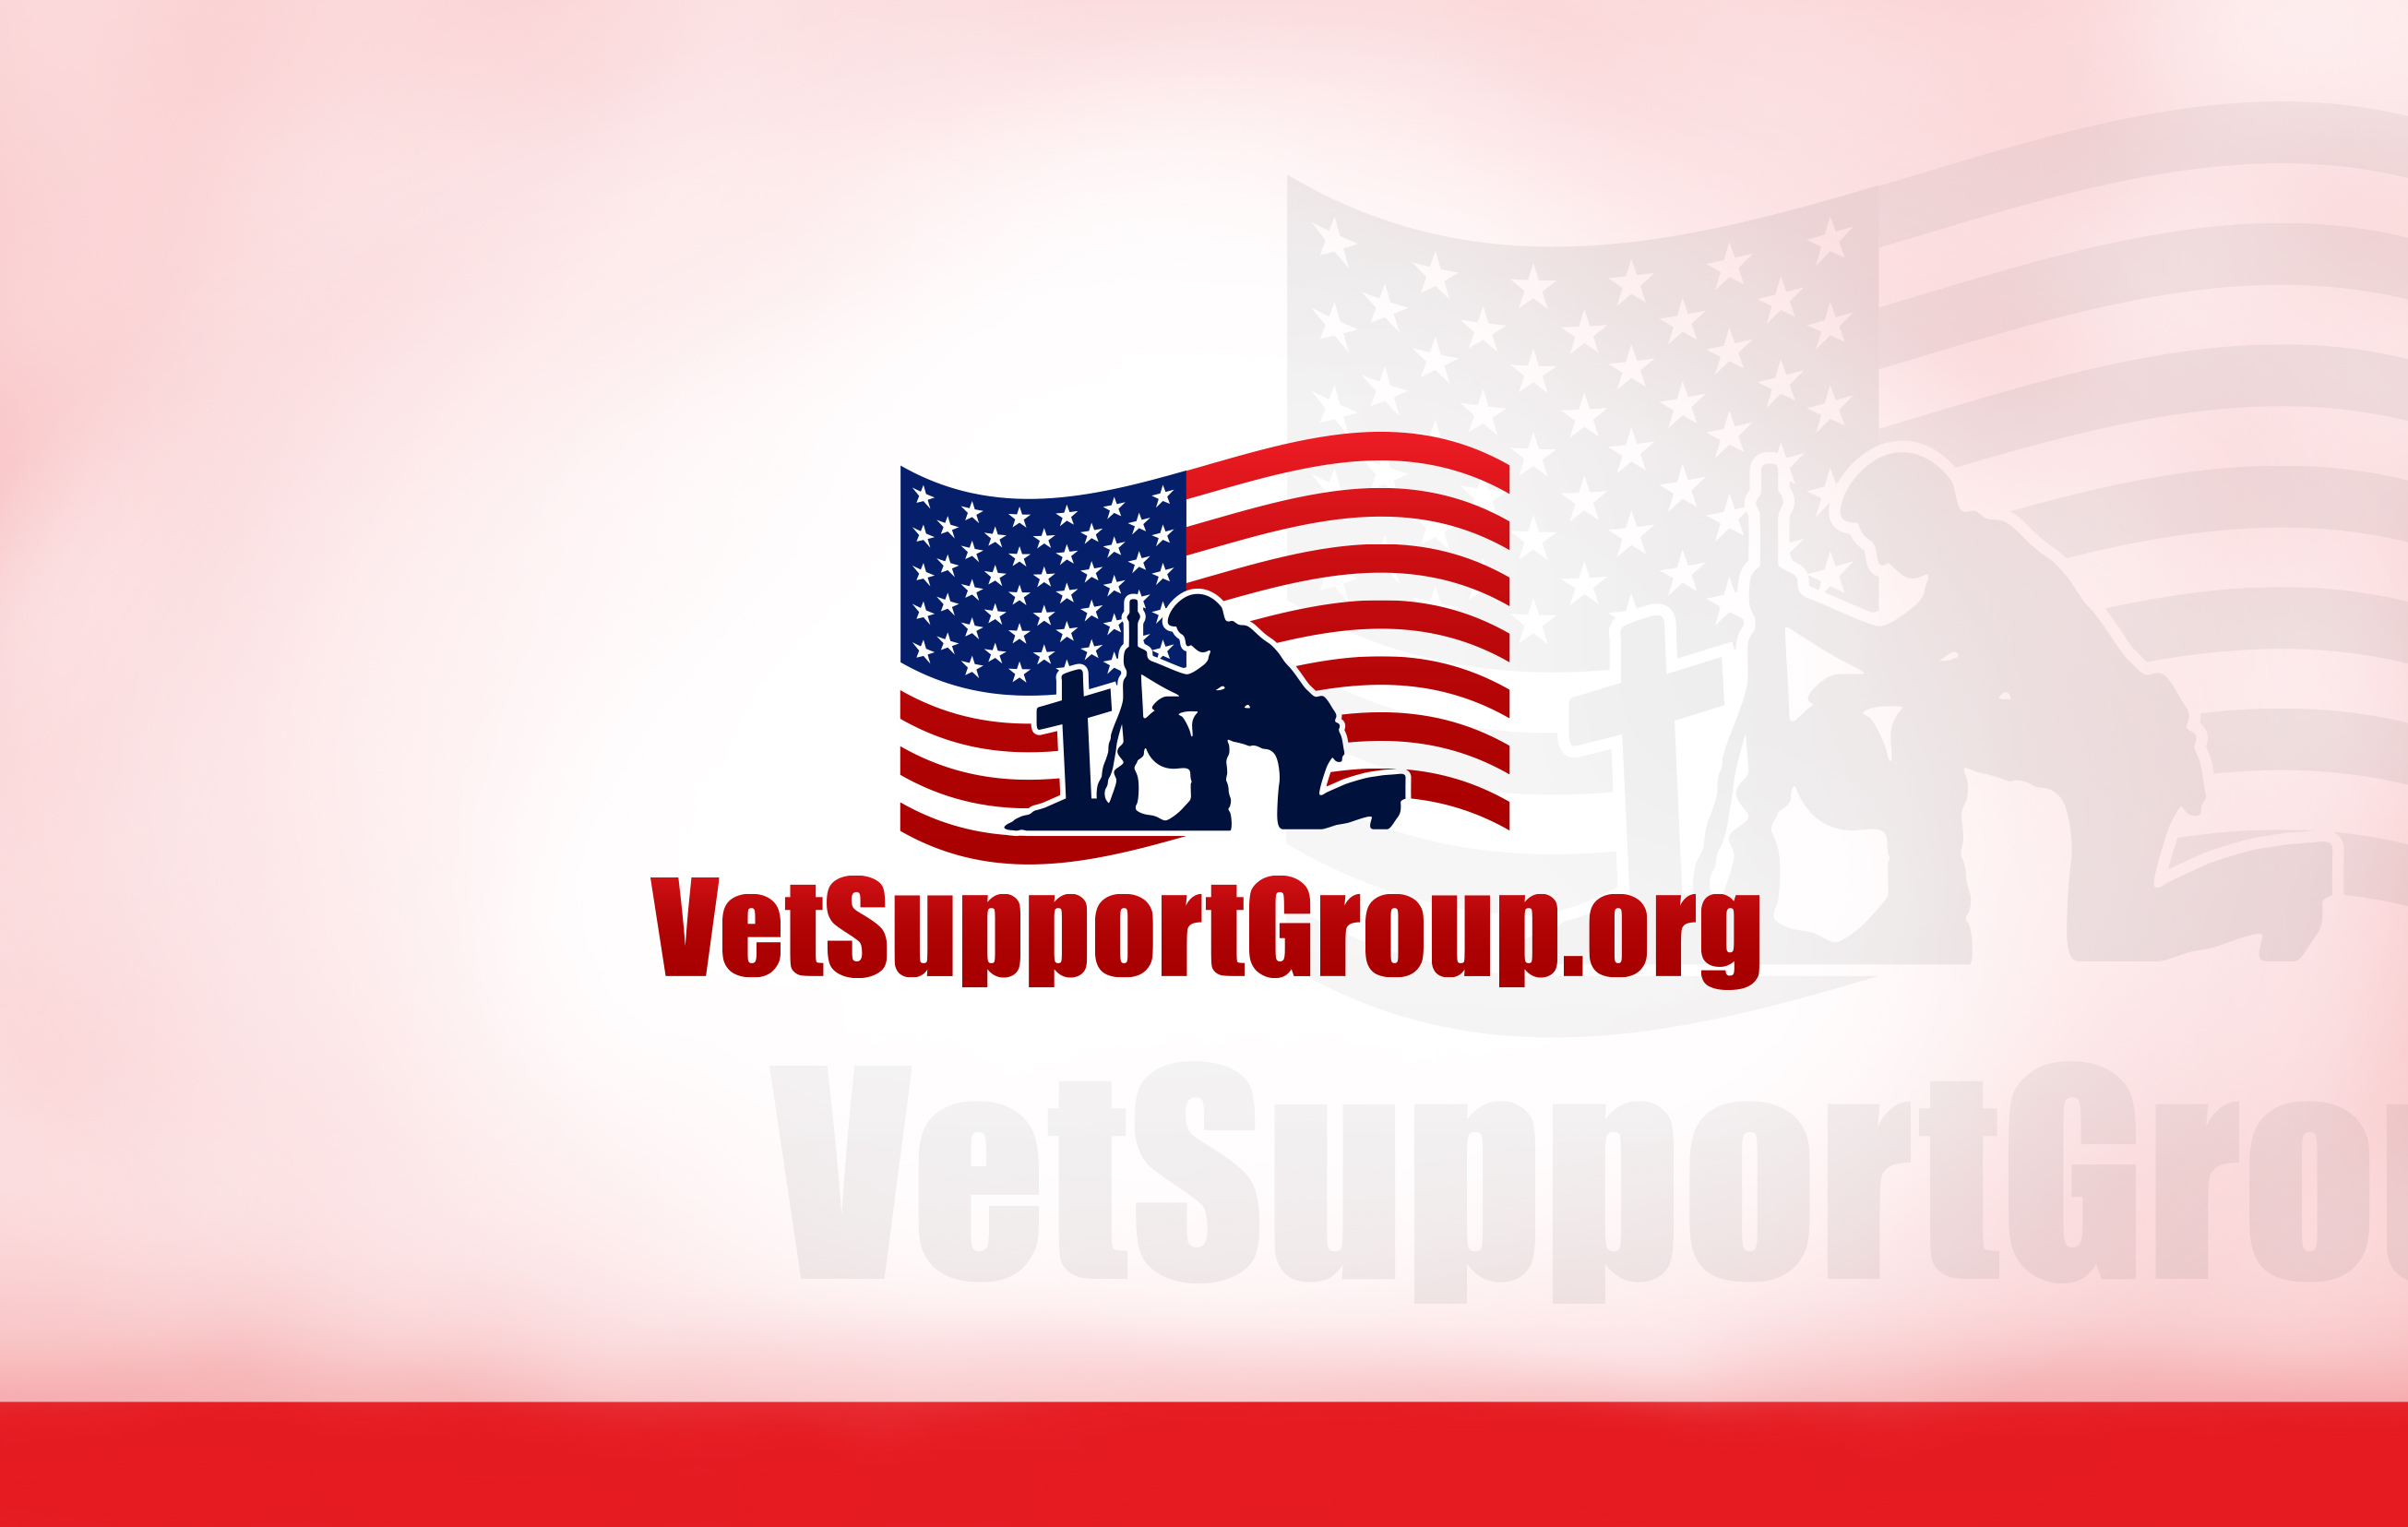 Vet Support Group Design #2